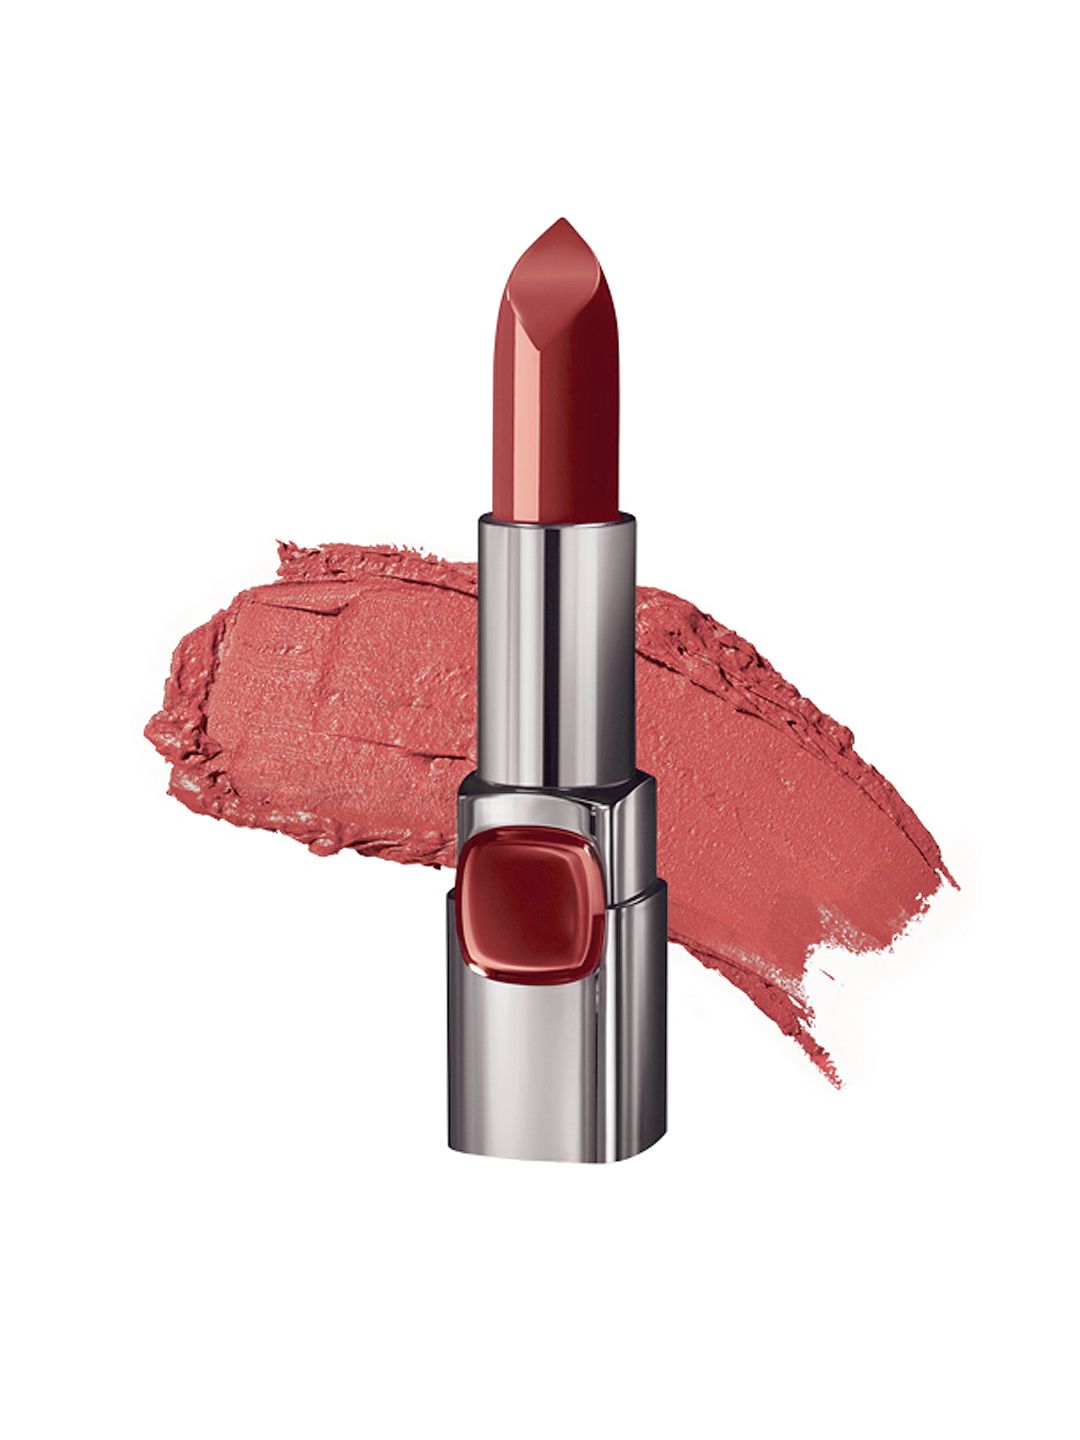 LOreal Paris Color Riche Moist Matte Lipstick - Rouge A Porter 233 Price in India